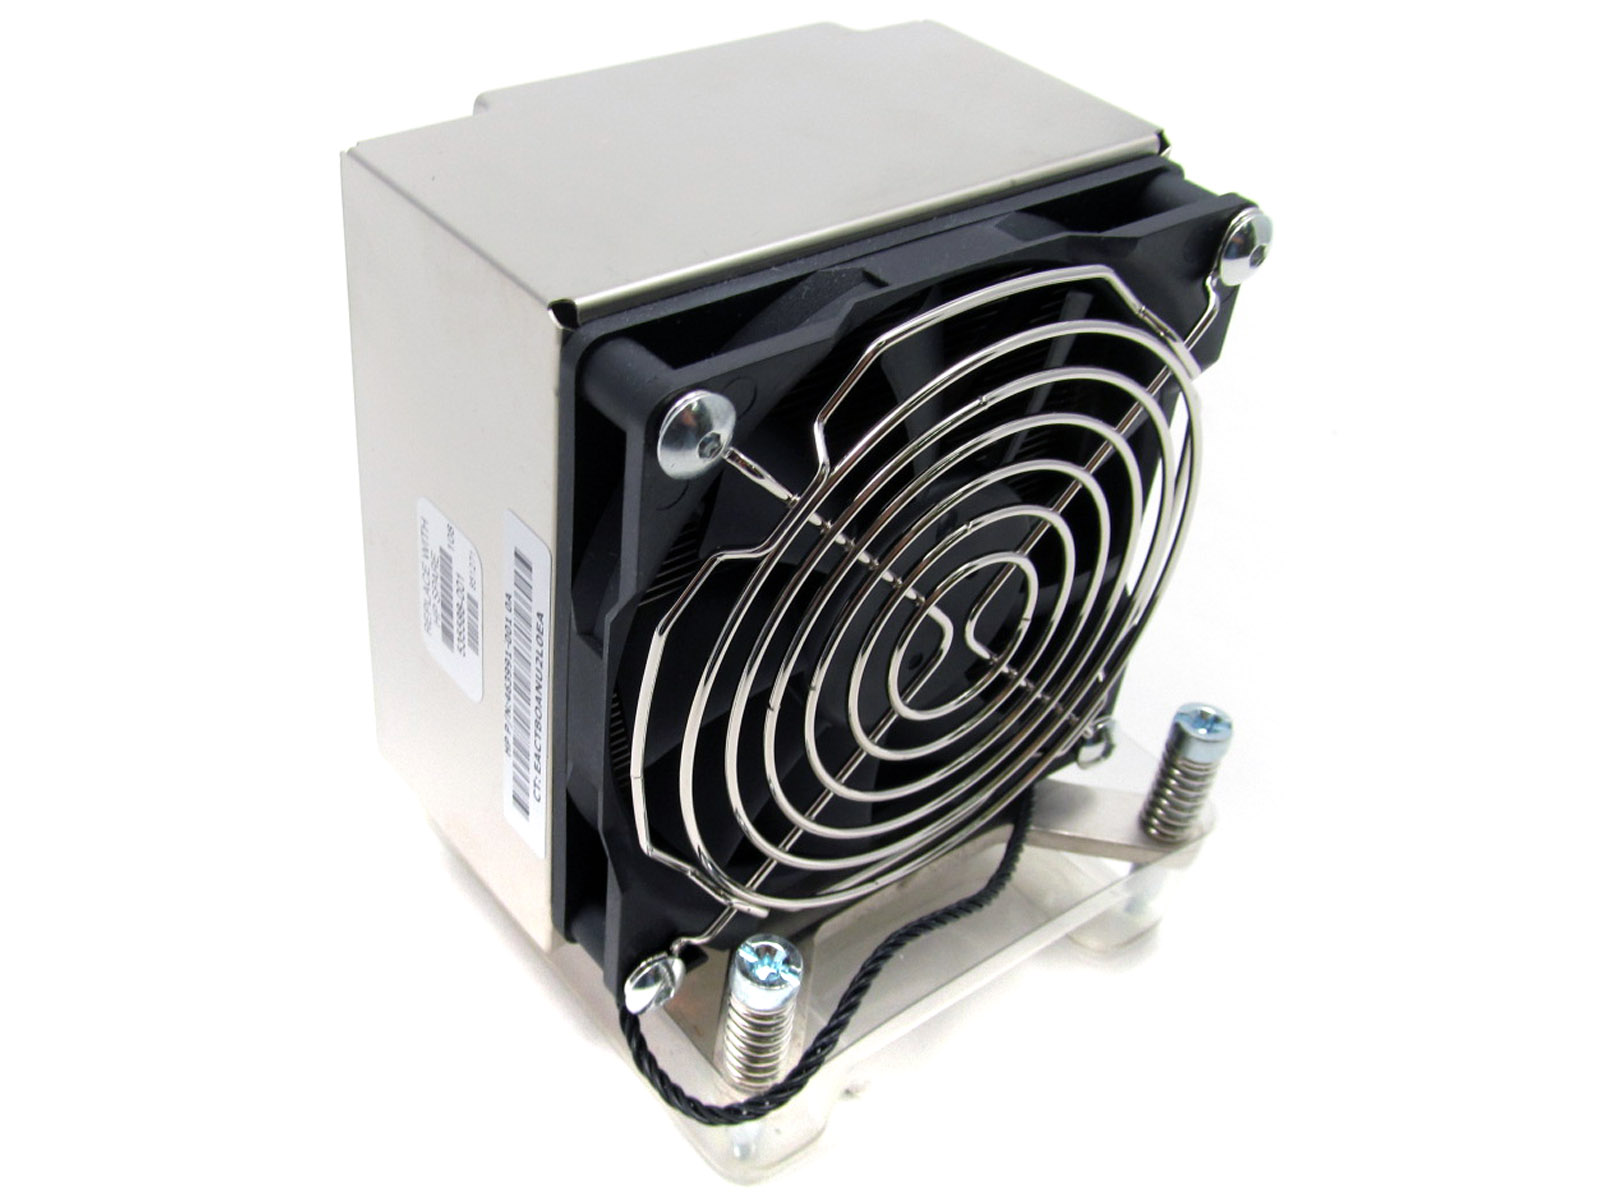 Z800 130w heatsink and fan